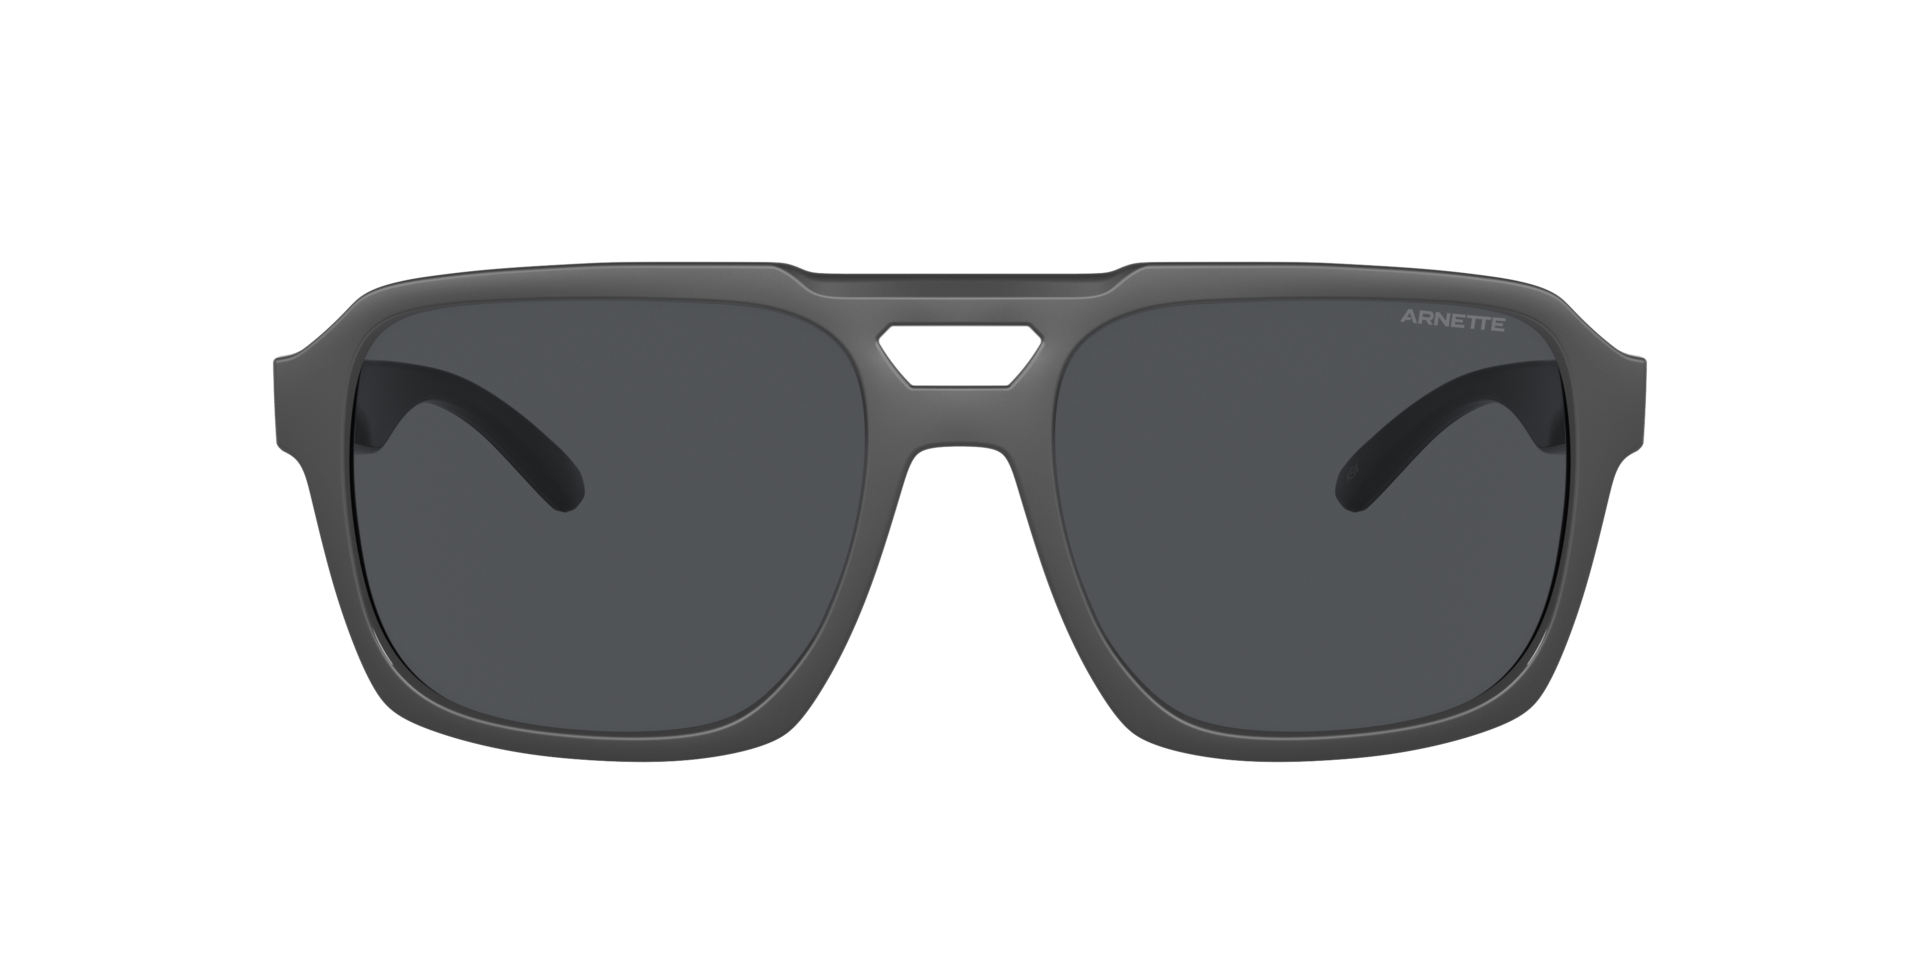 Das Bild zeigt die Sonnenbrille AN4339 287087 von der Marke Arnette in schwarz.